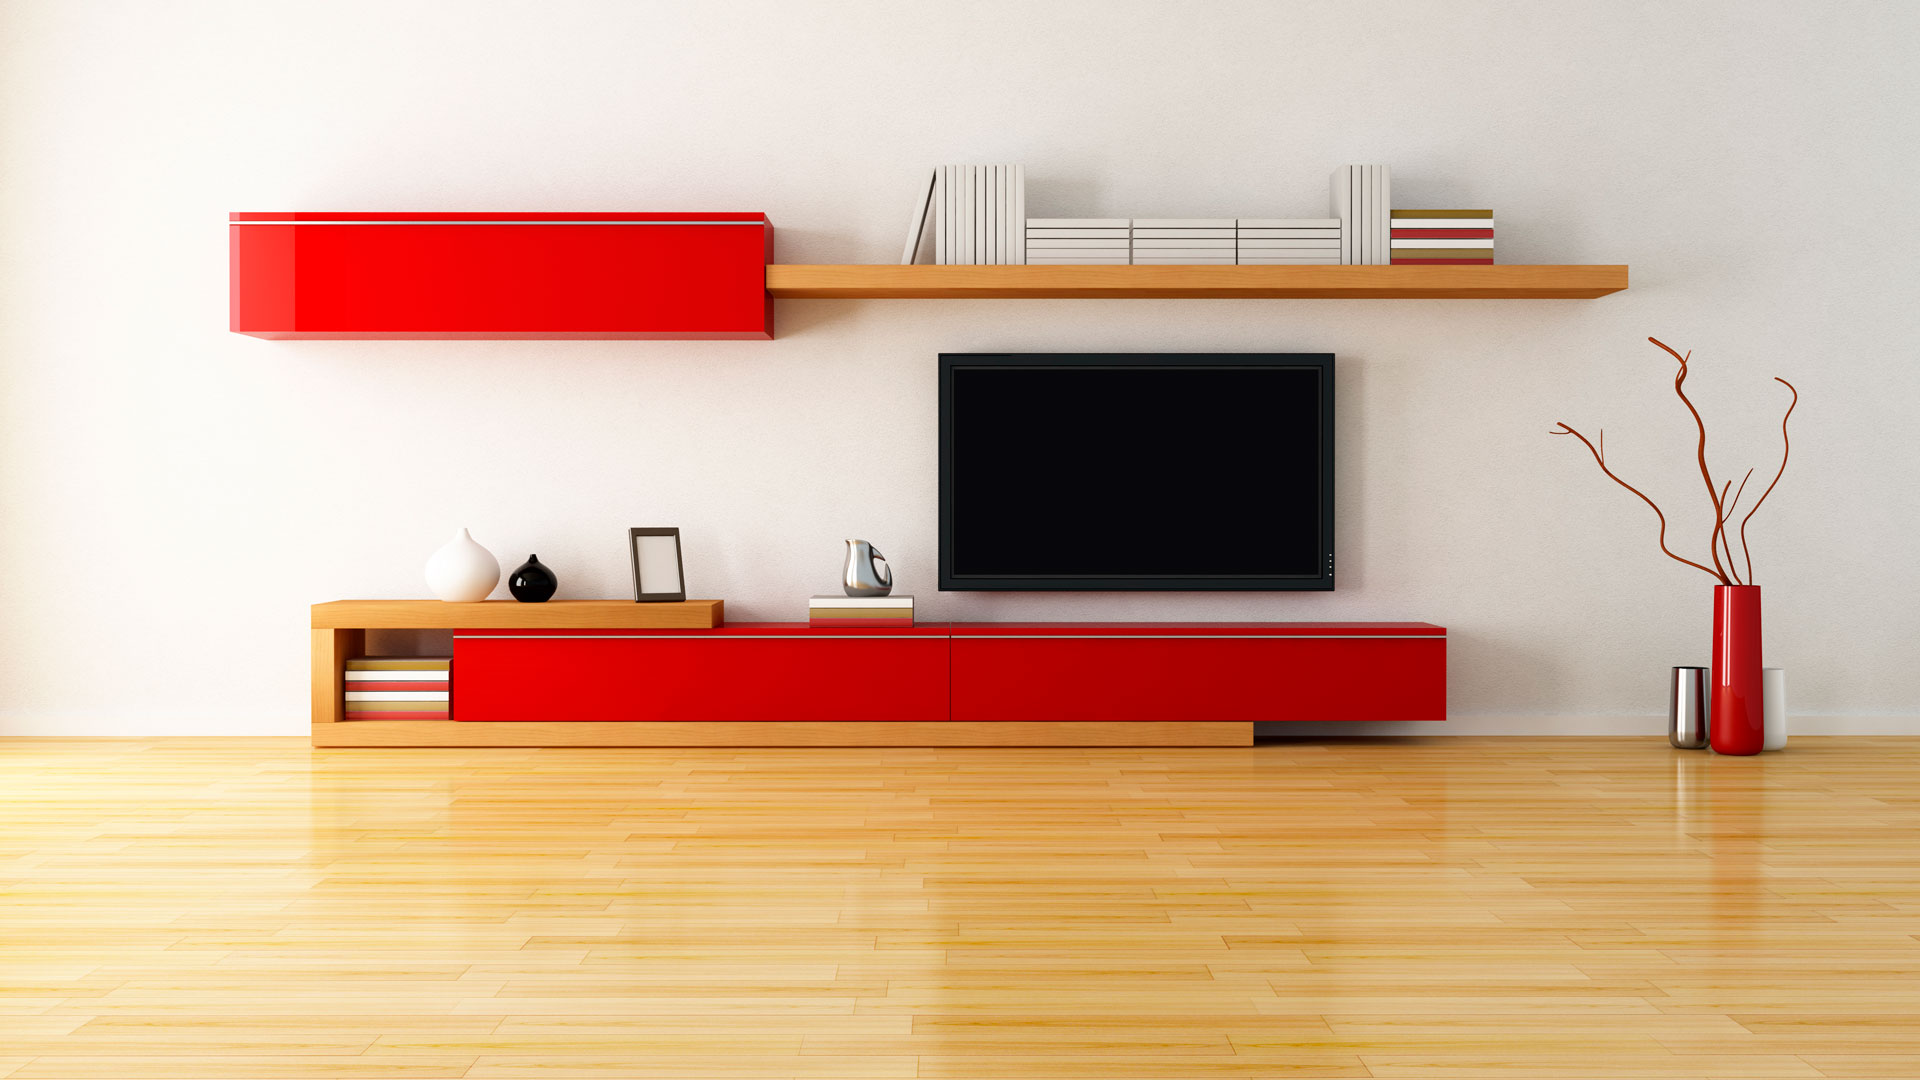 espacio elegenta con gama de color rojo brillante, blanco y miel, parquet de madera  semi reflejante